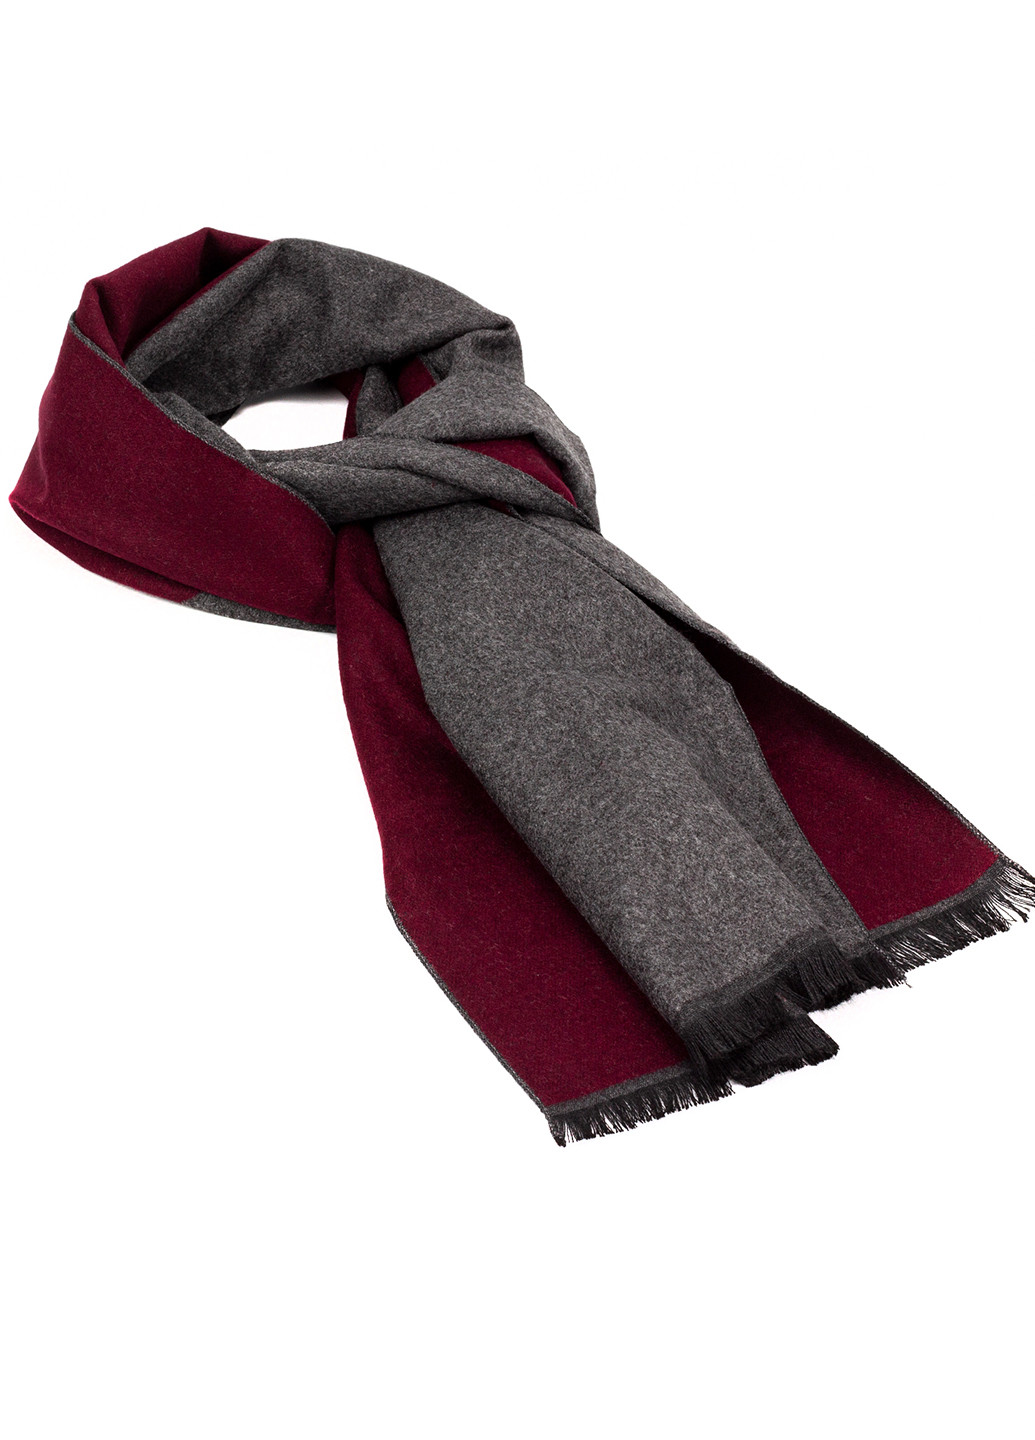 Мужской однотонный шарф серый с карсным LuxWear MS1008 однотонный серо-красный кэжуал полиэстер